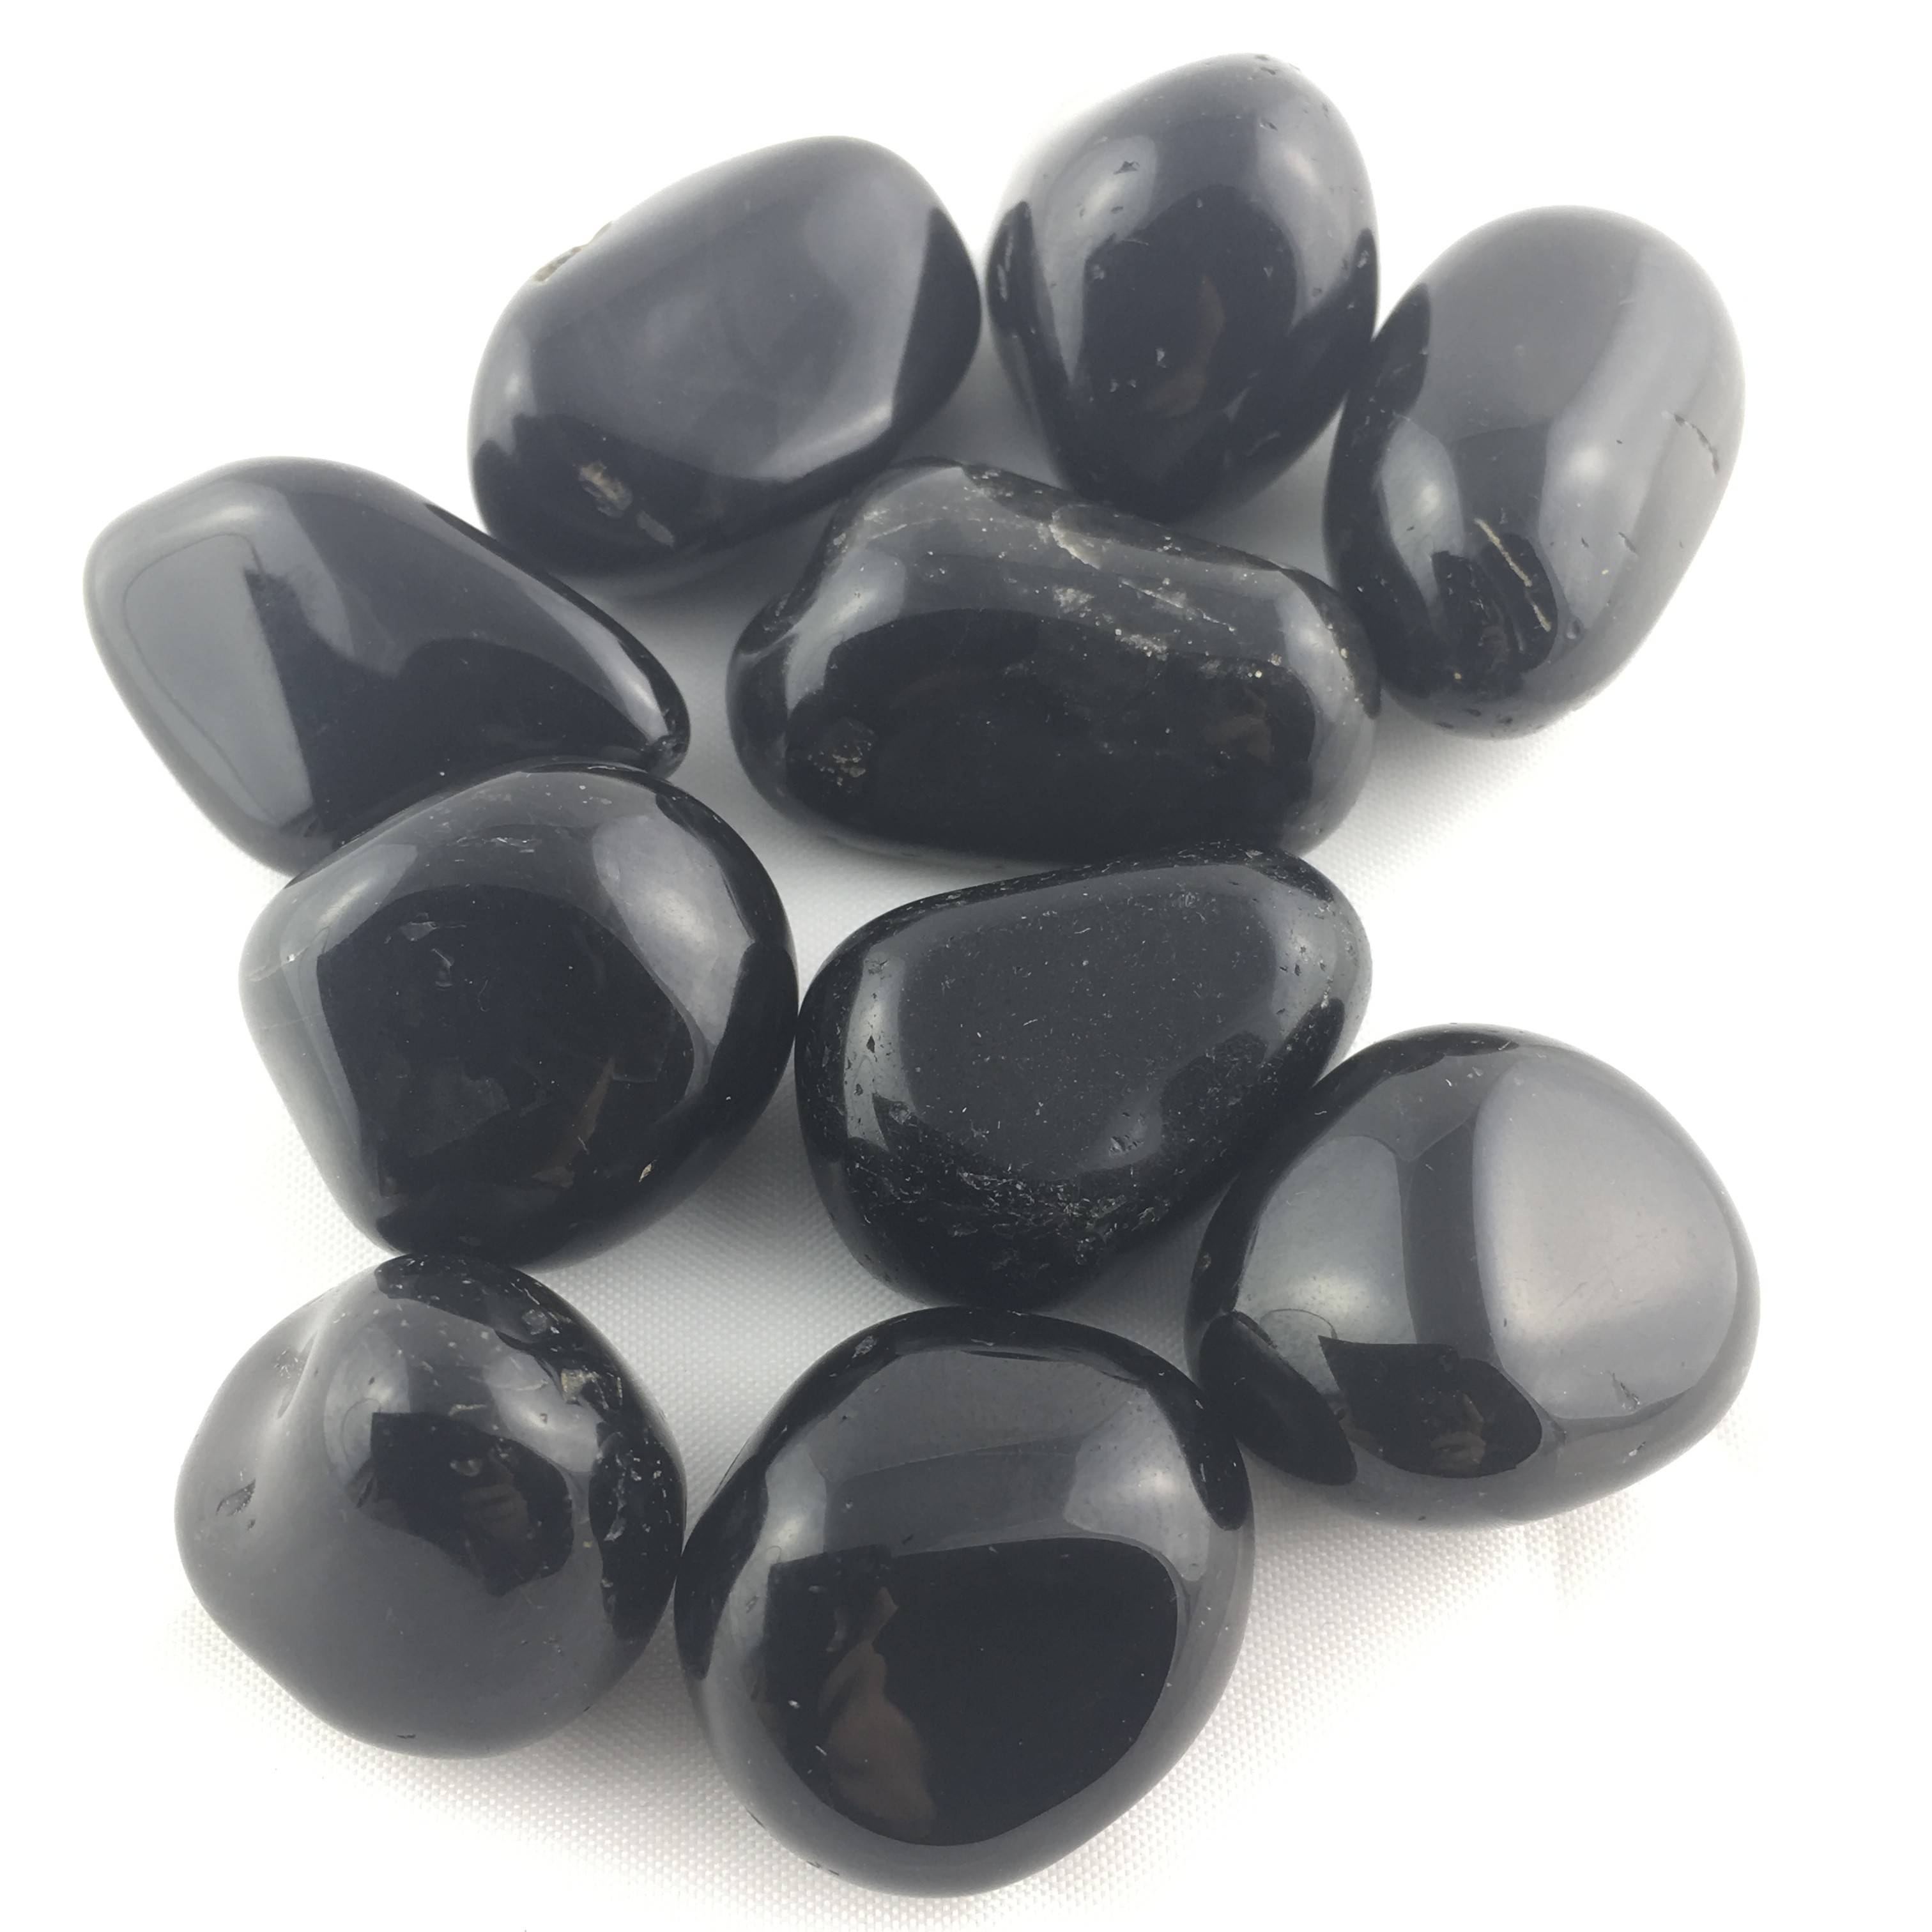 2 MEDIUM/LARGE Black Onyx Tumbled Stone Crystal Healing Tumble Gemstone Reiki